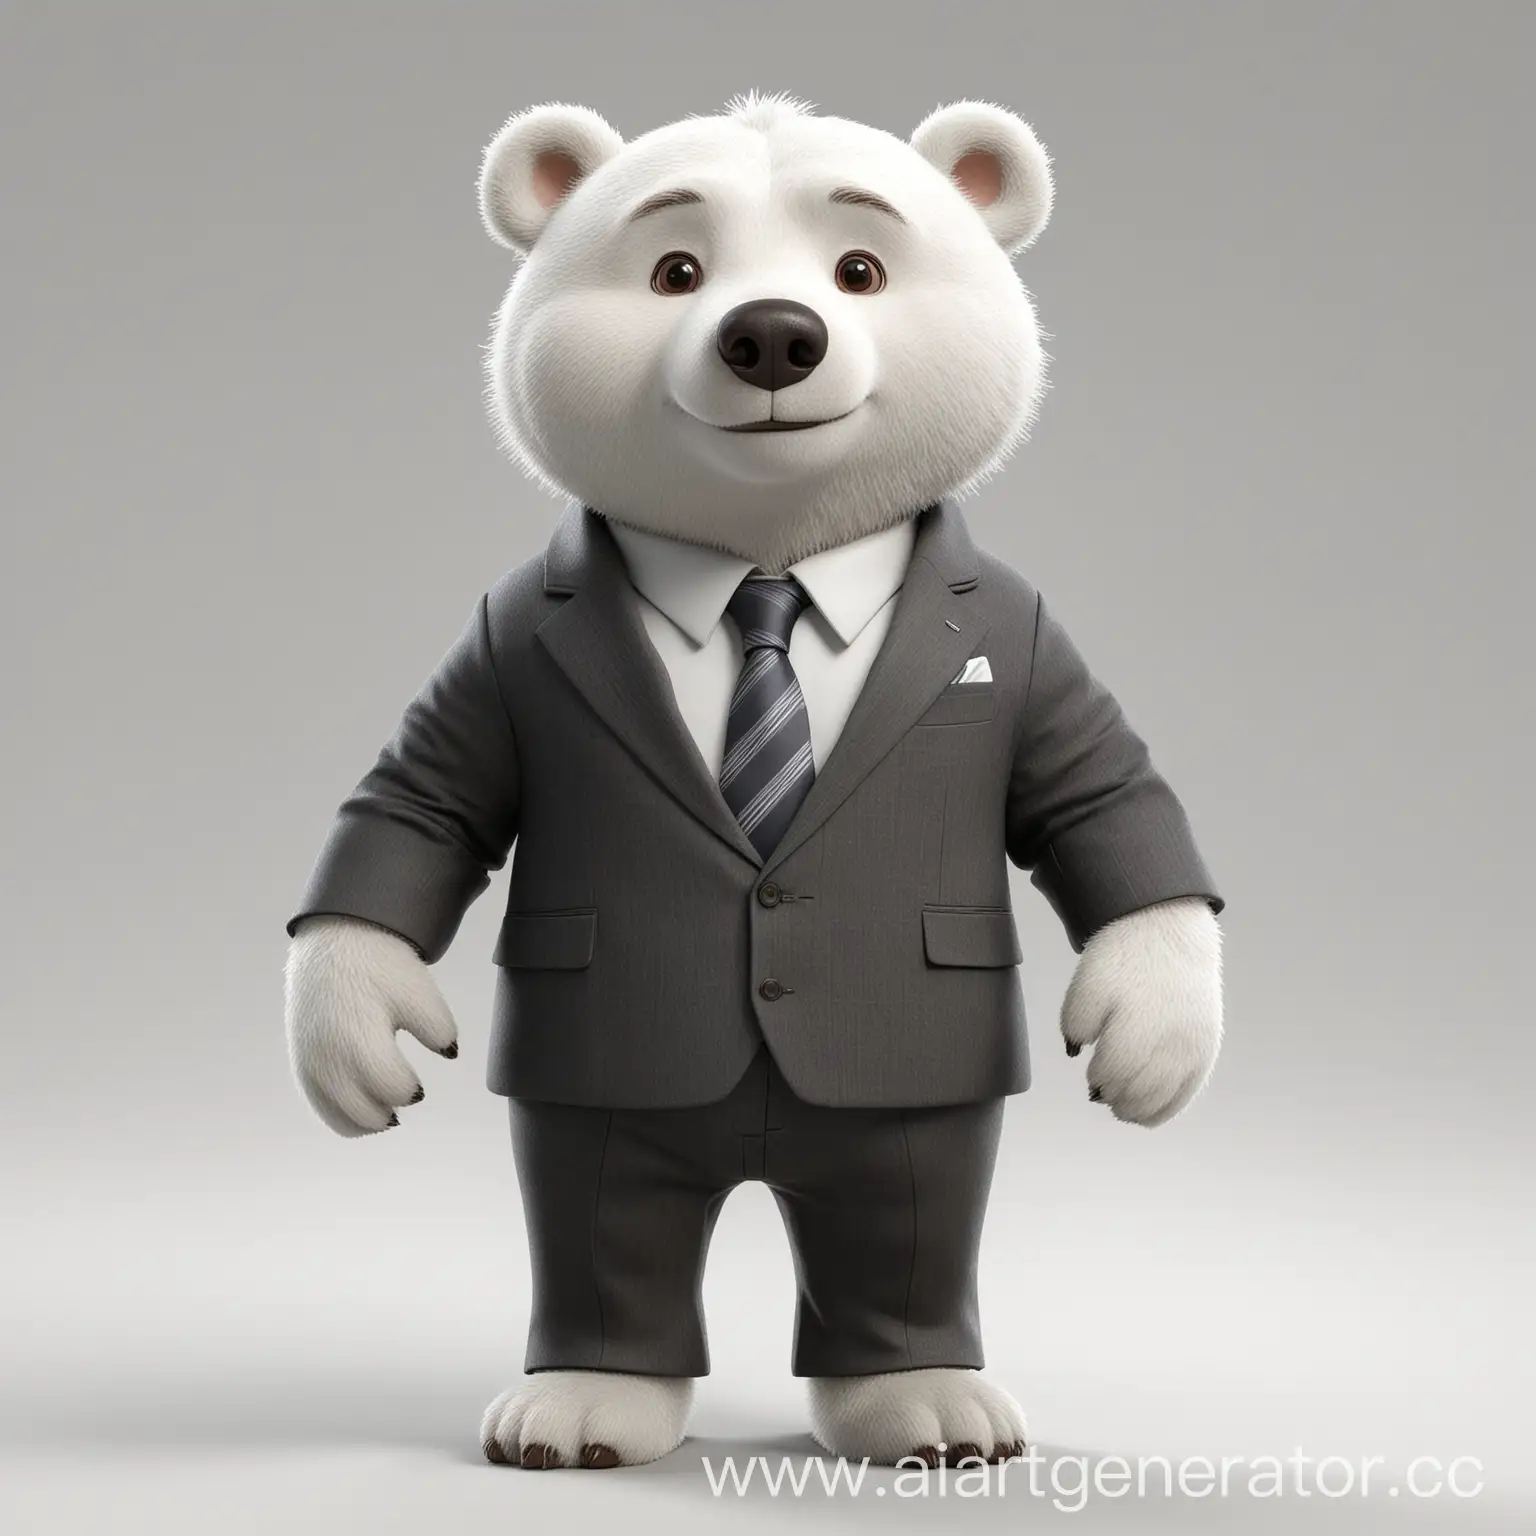 3D Персонаж в стиле pixar. белый медведь  в деловом костюме, на белом фоне, меньше деталей